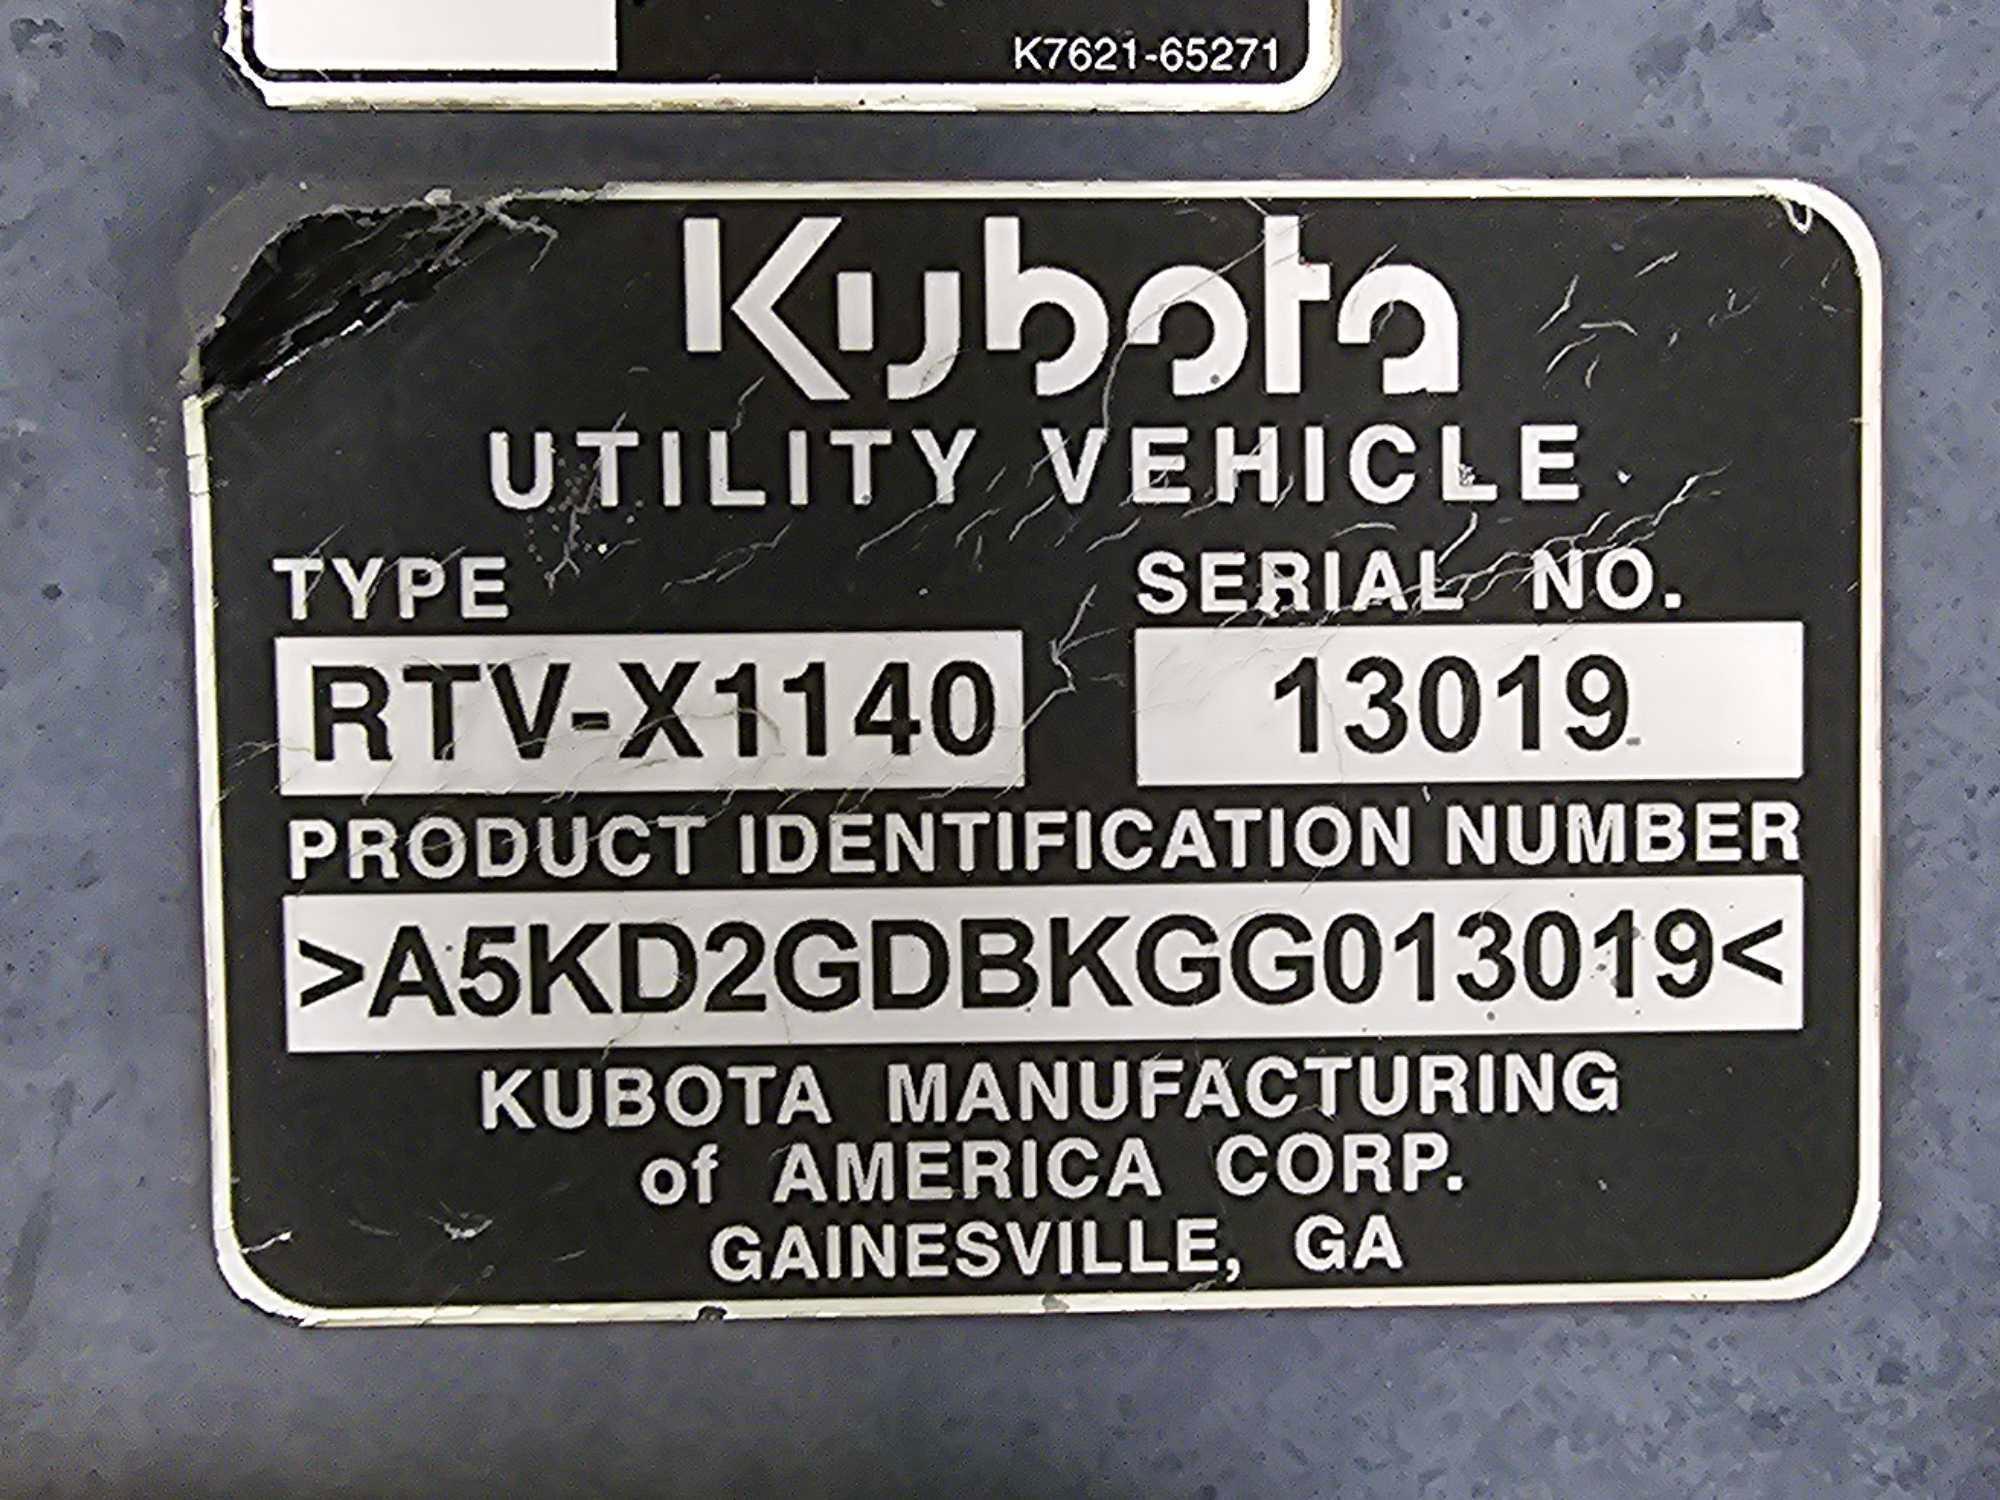 Kubota RTV-X1140 Utility Vehicle